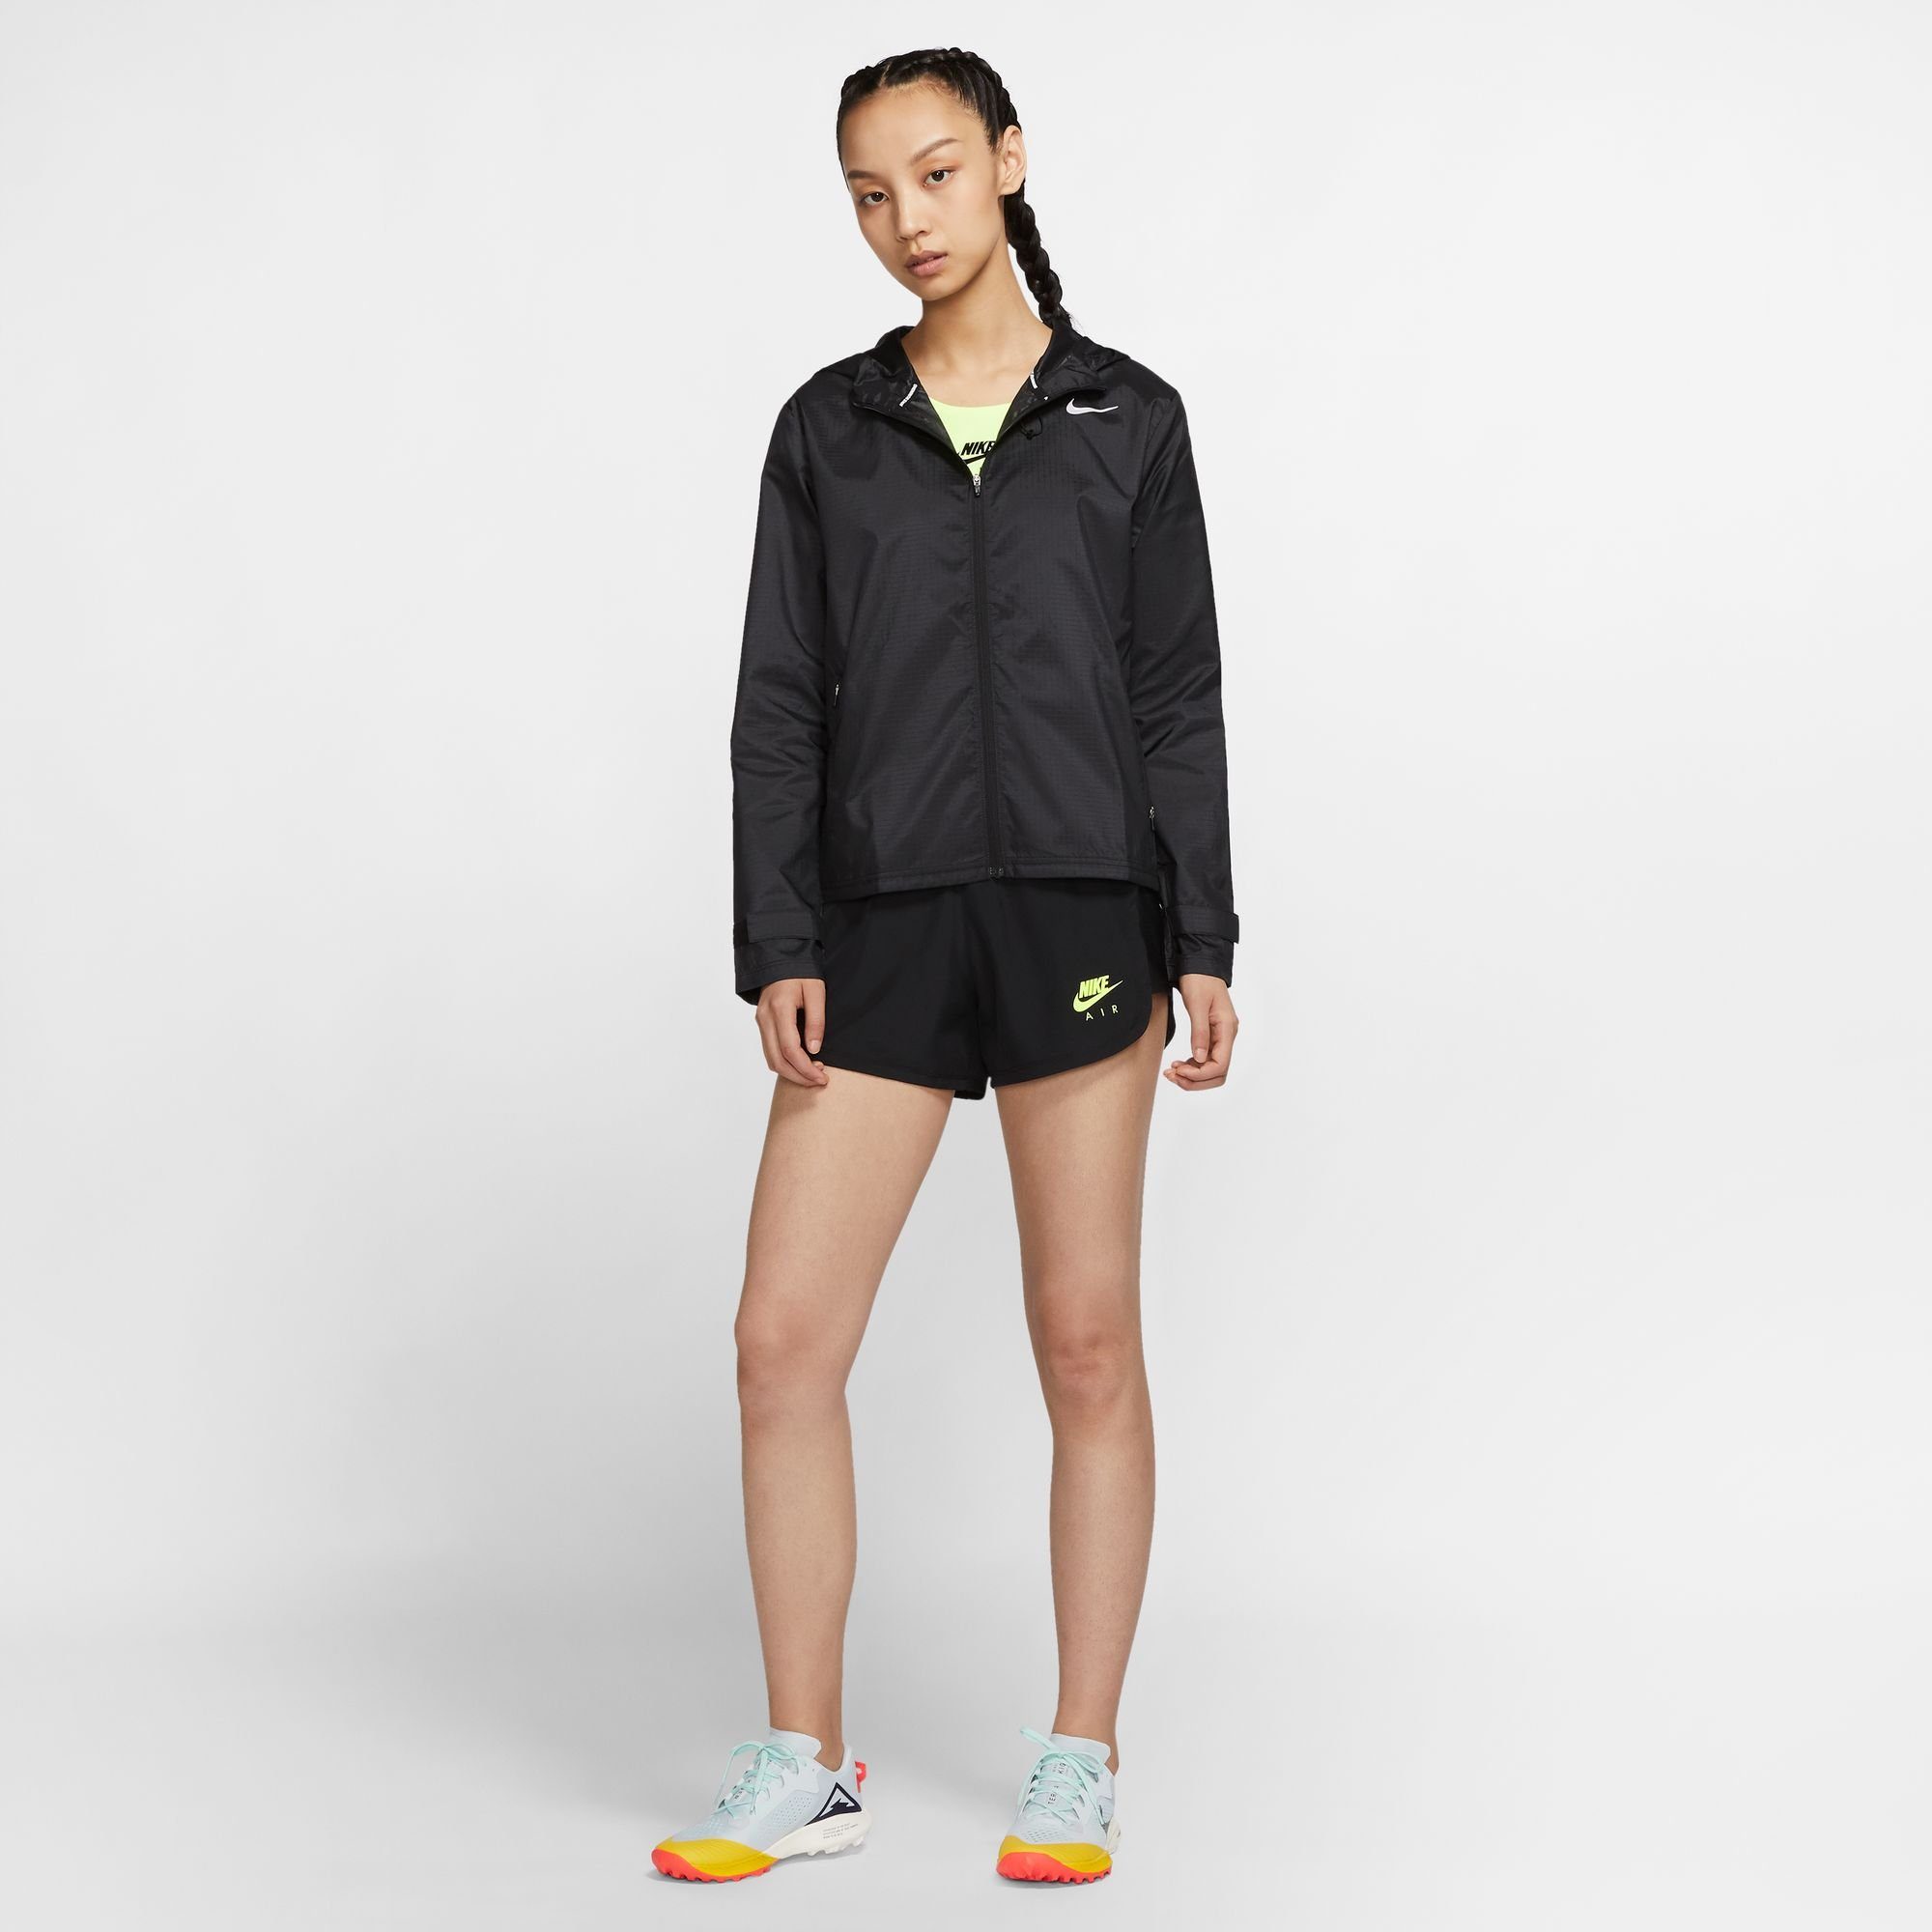 Nike Women's Running Laufjacke schwarz Jacket Essential